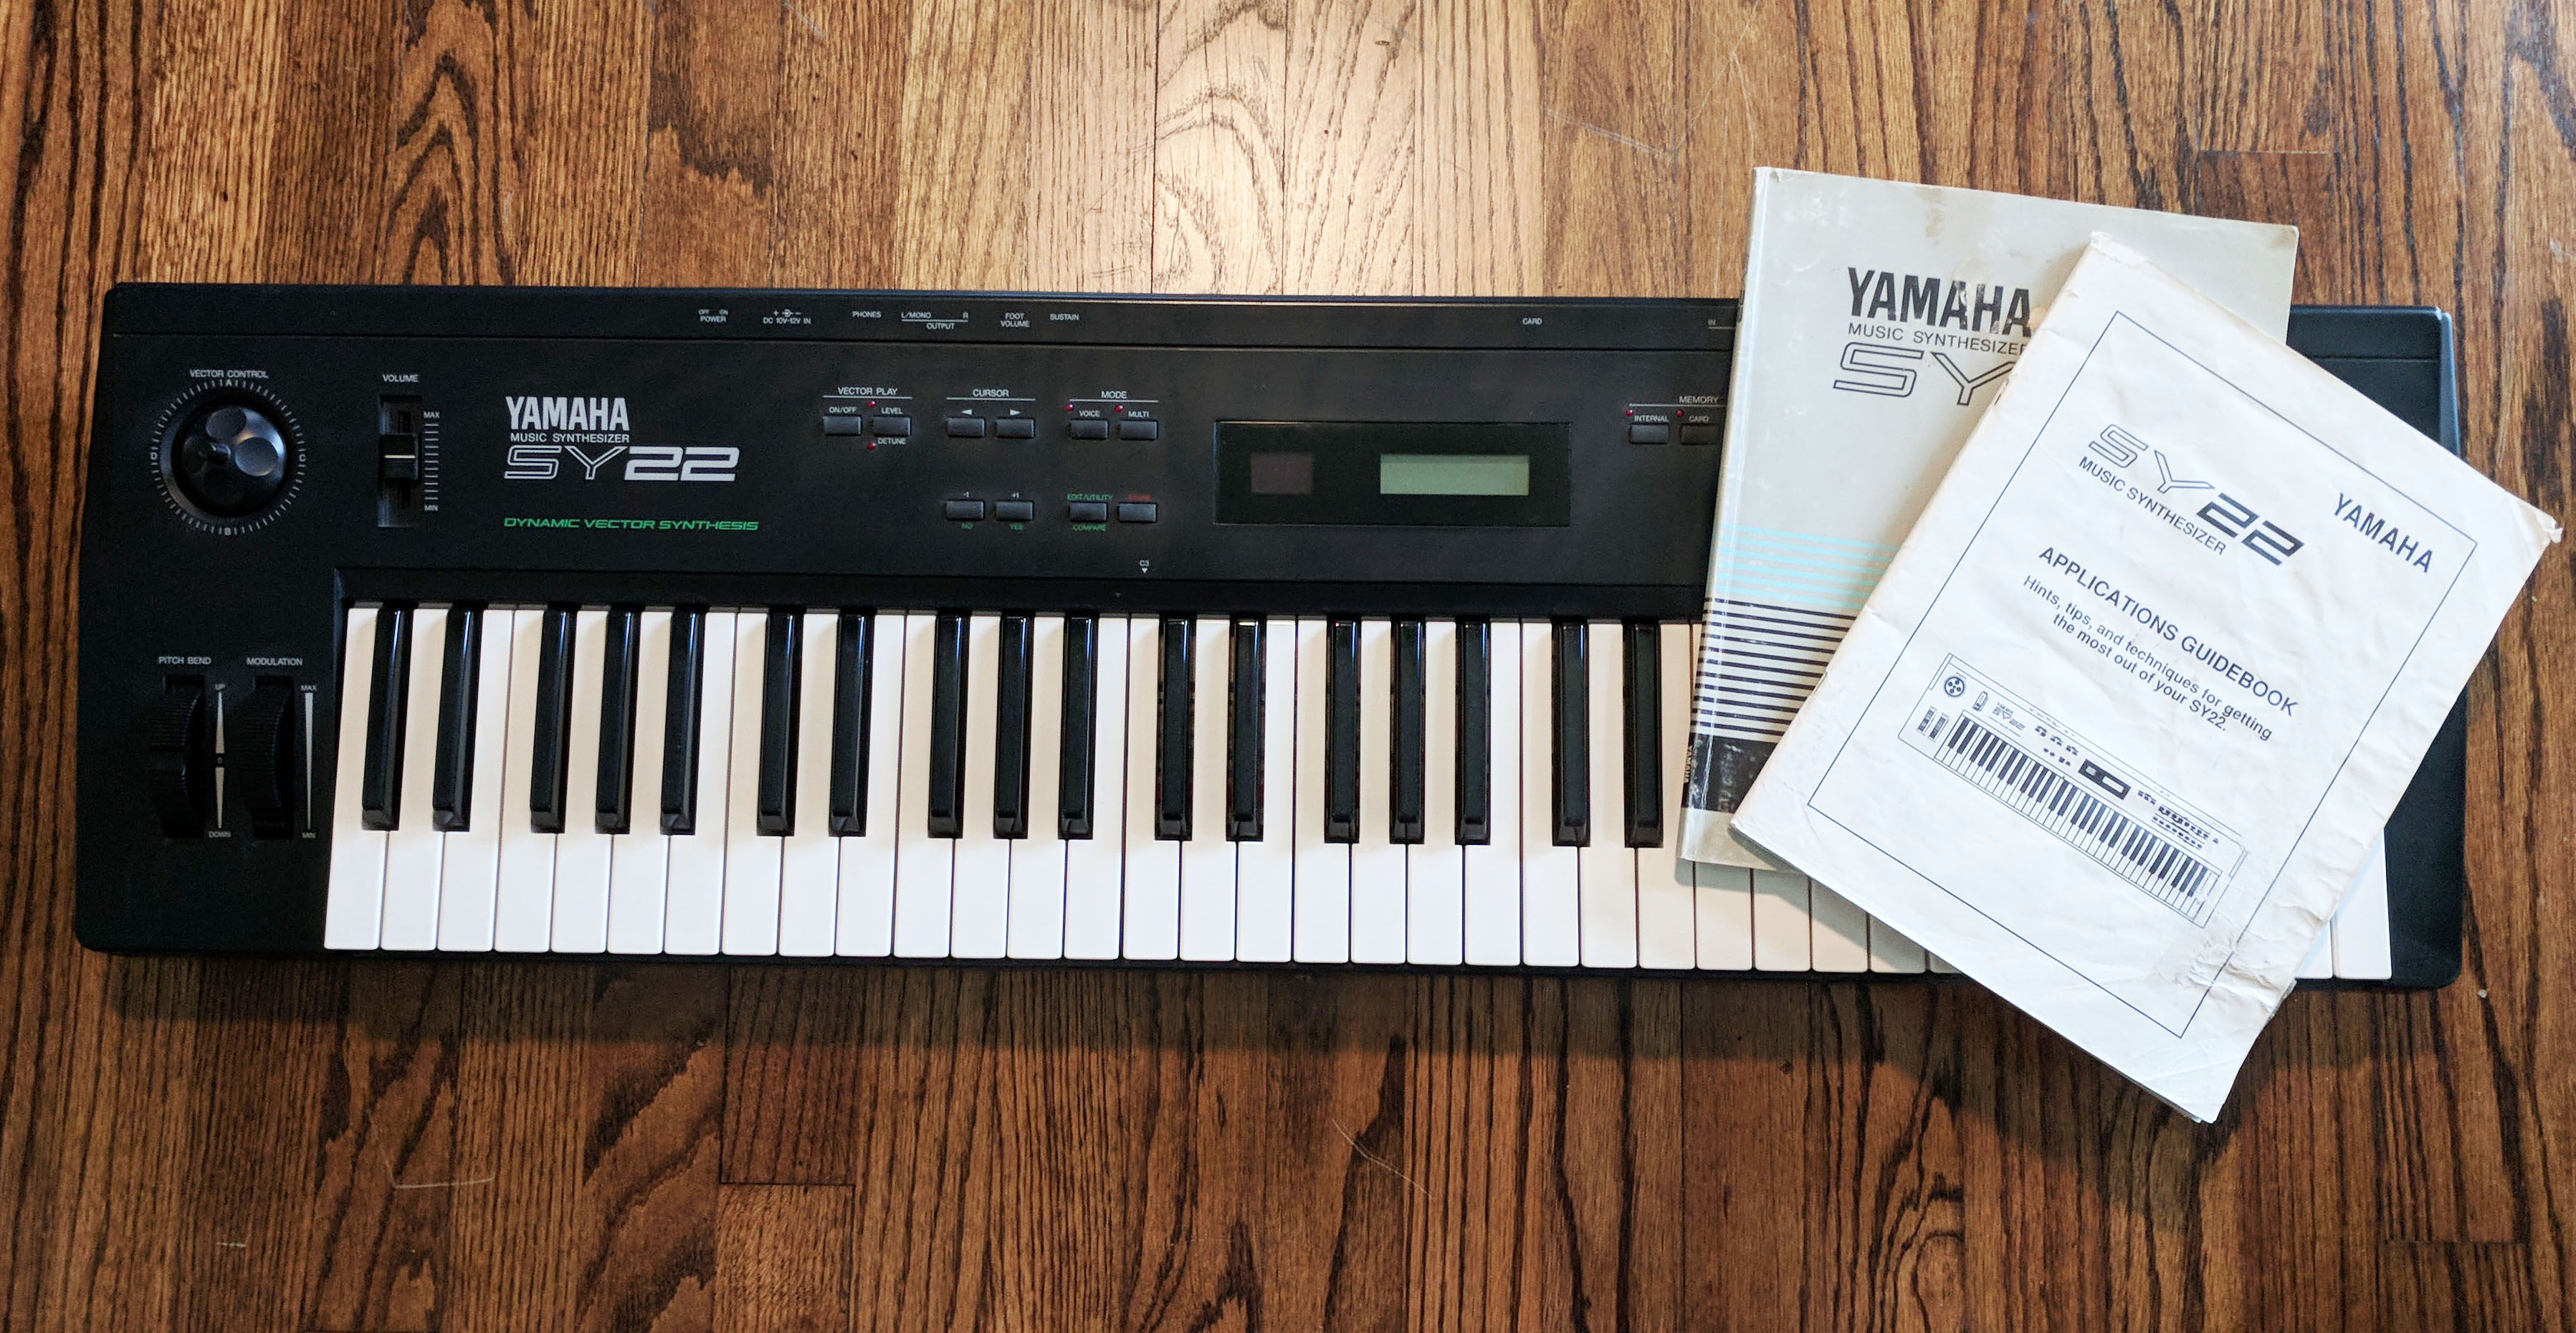 Yamaha SY22